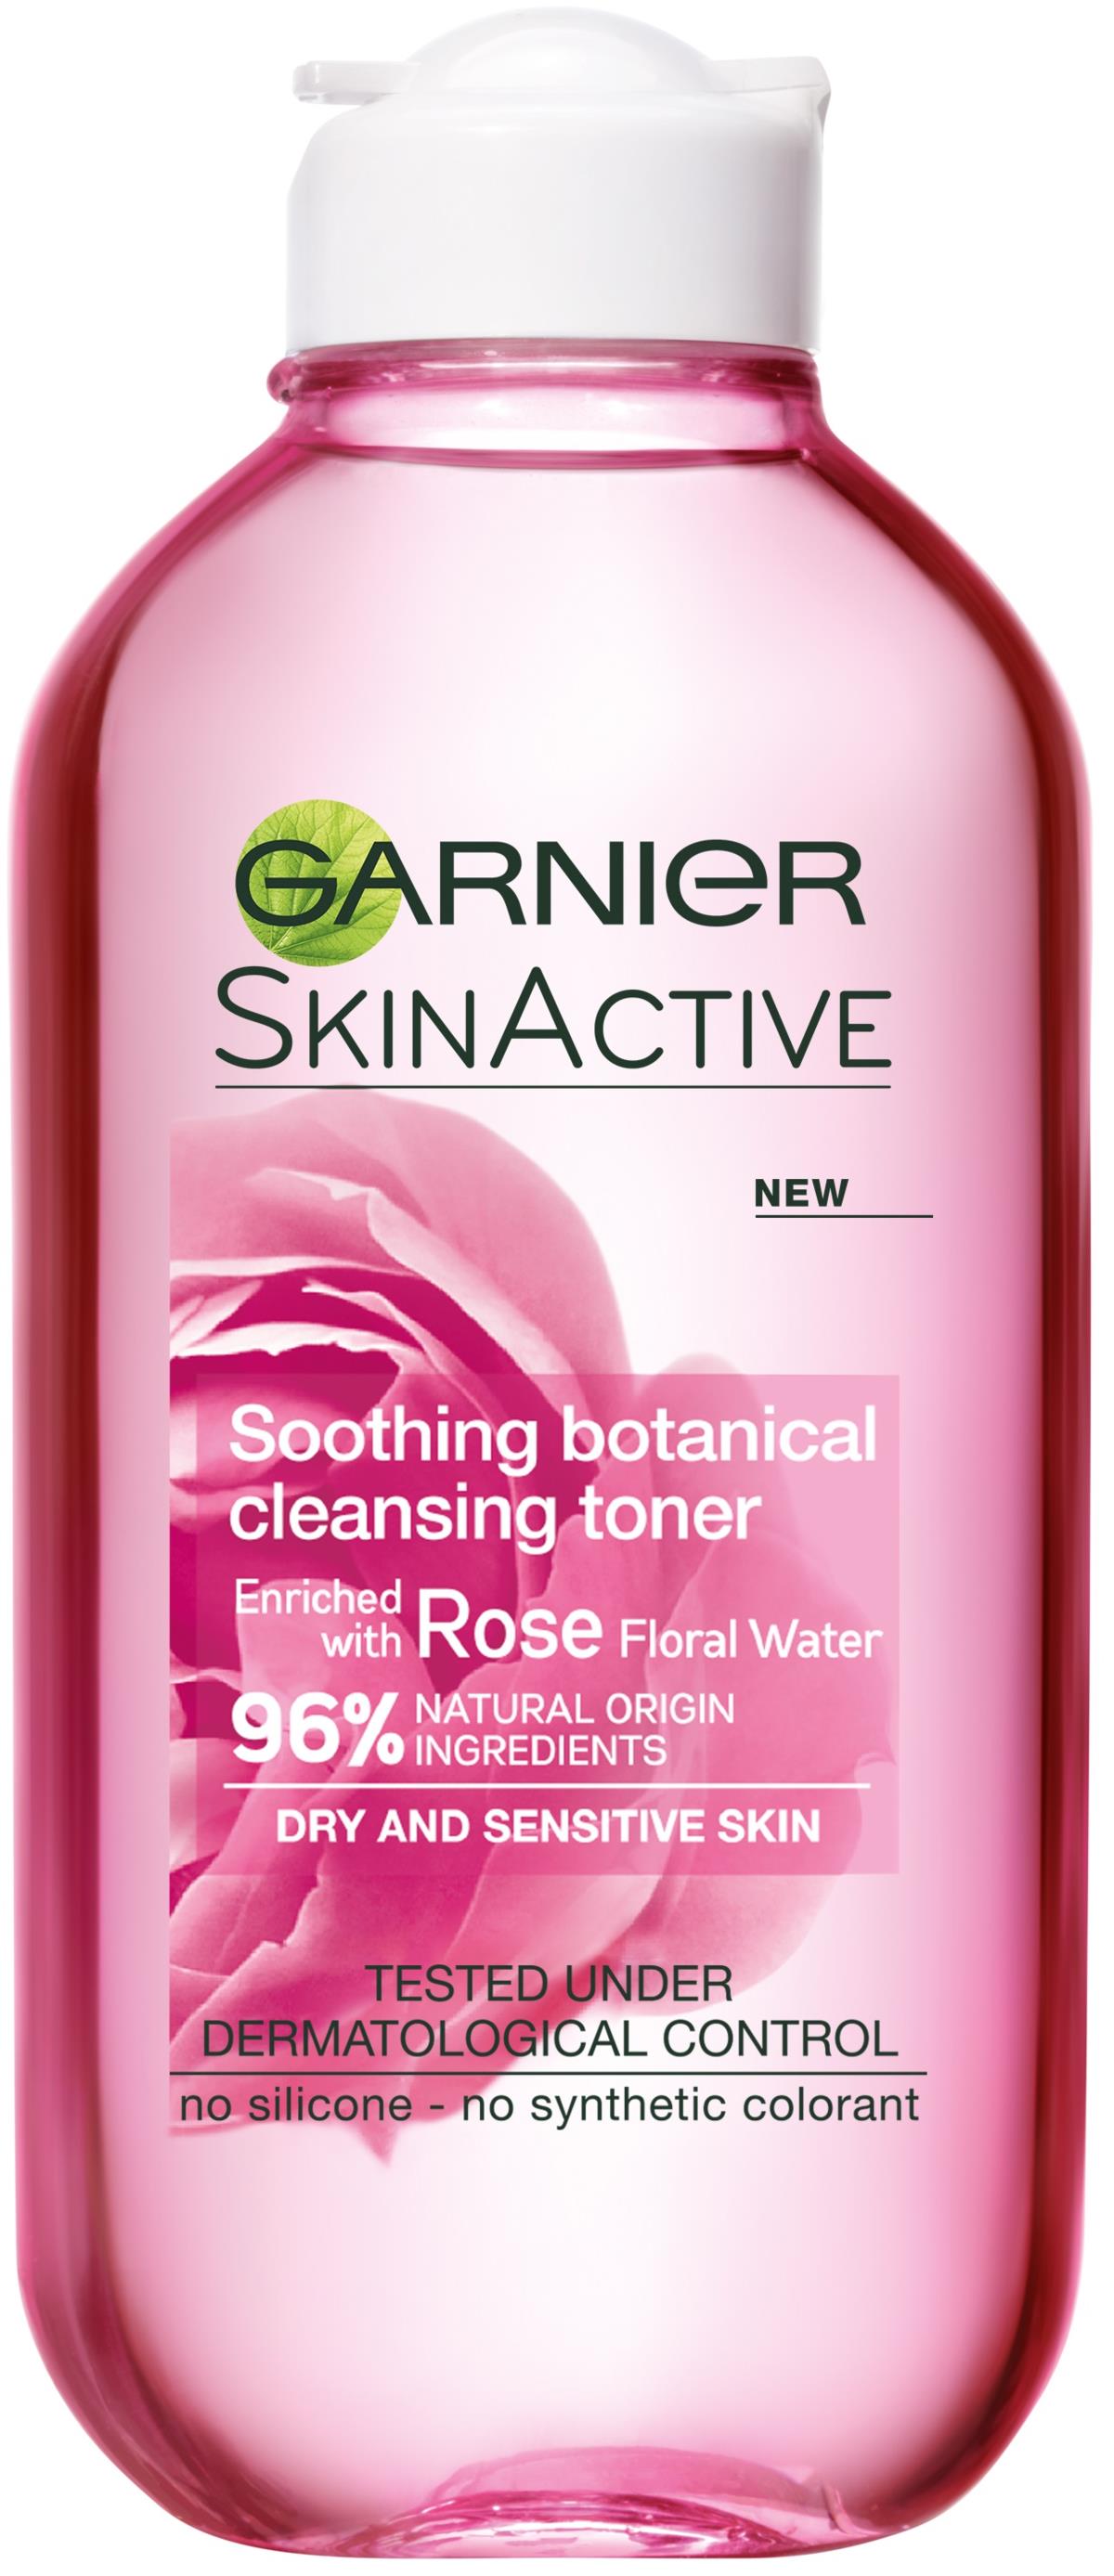 Garnier SkinActive Soothing ml 200 Botanical Cleansing Toner